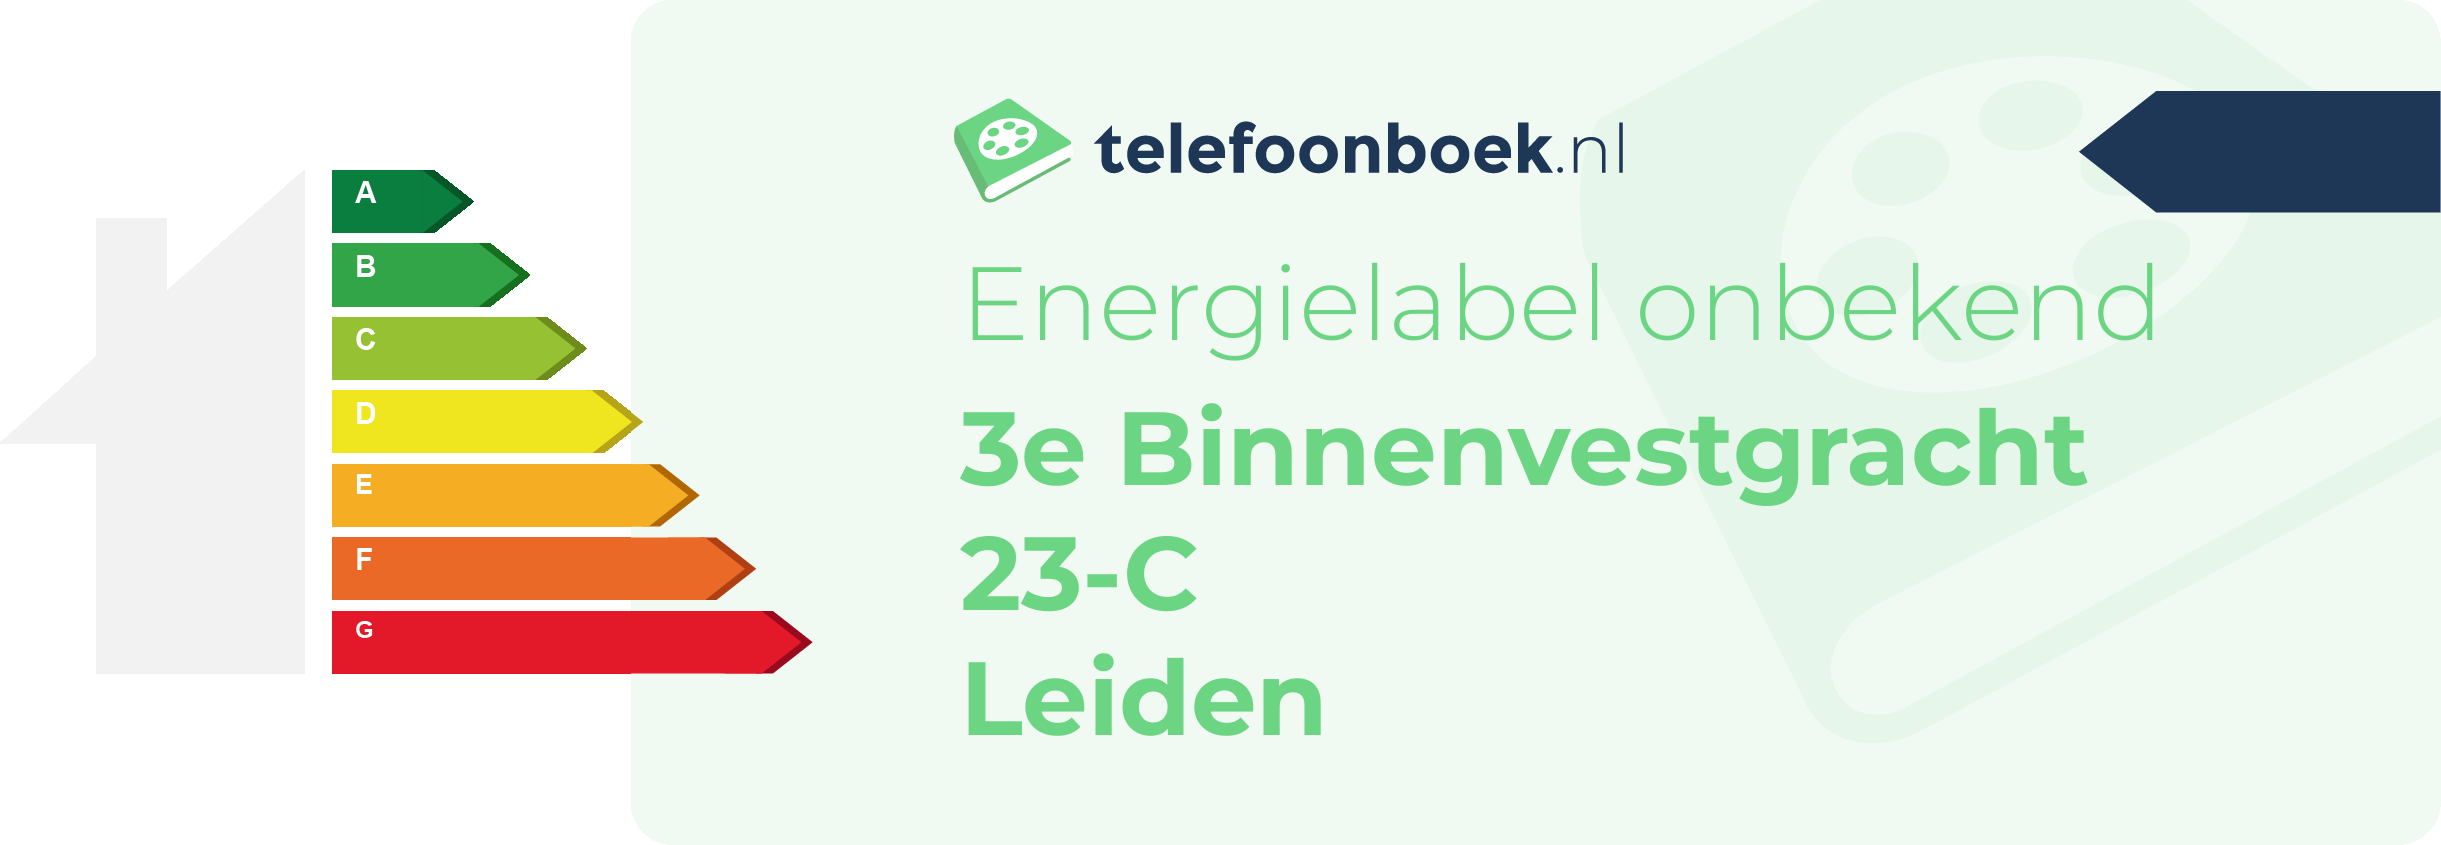 Energielabel 3e Binnenvestgracht 23-C Leiden